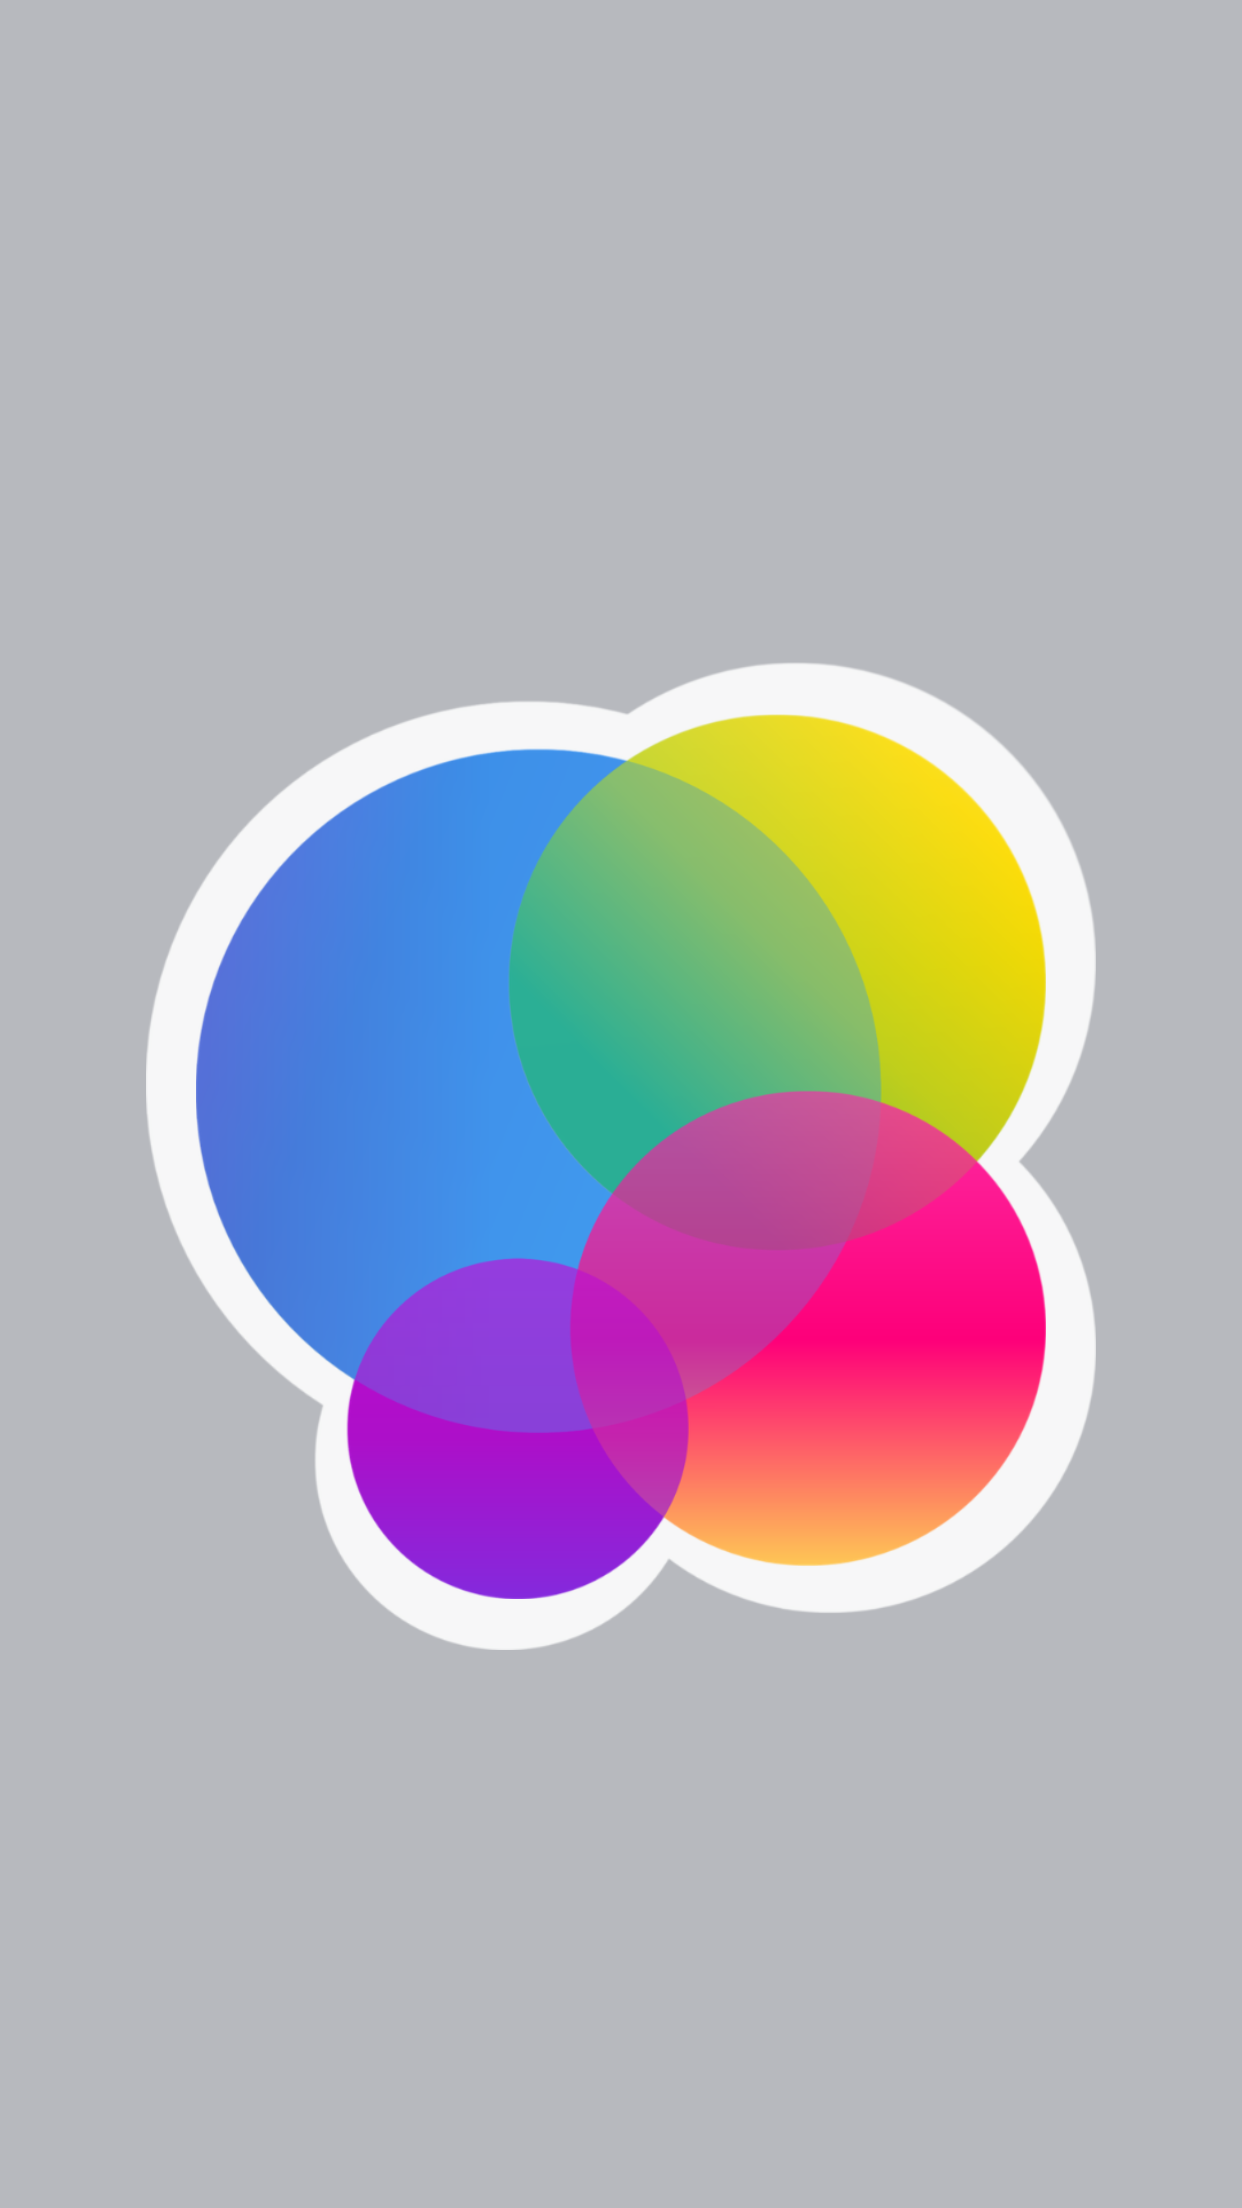 ios 10 wallpaper,circle,colorfulness,logo,graphics,magenta